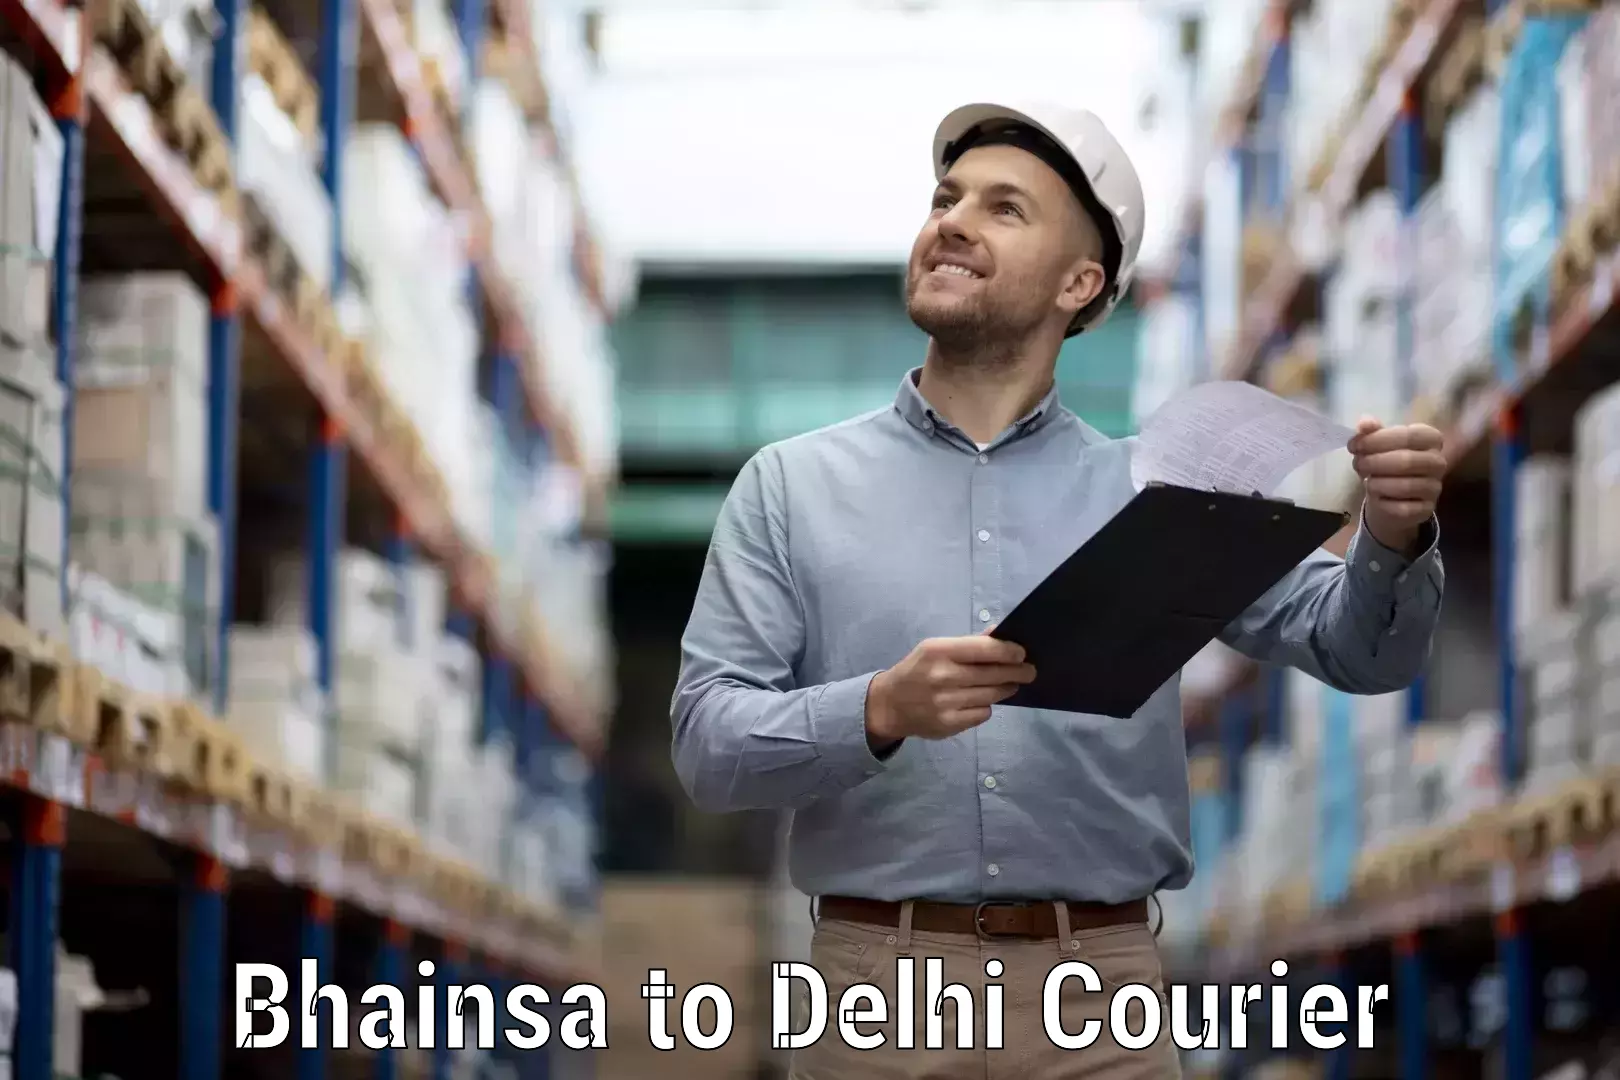 Courier service comparison Bhainsa to Jamia Hamdard New Delhi